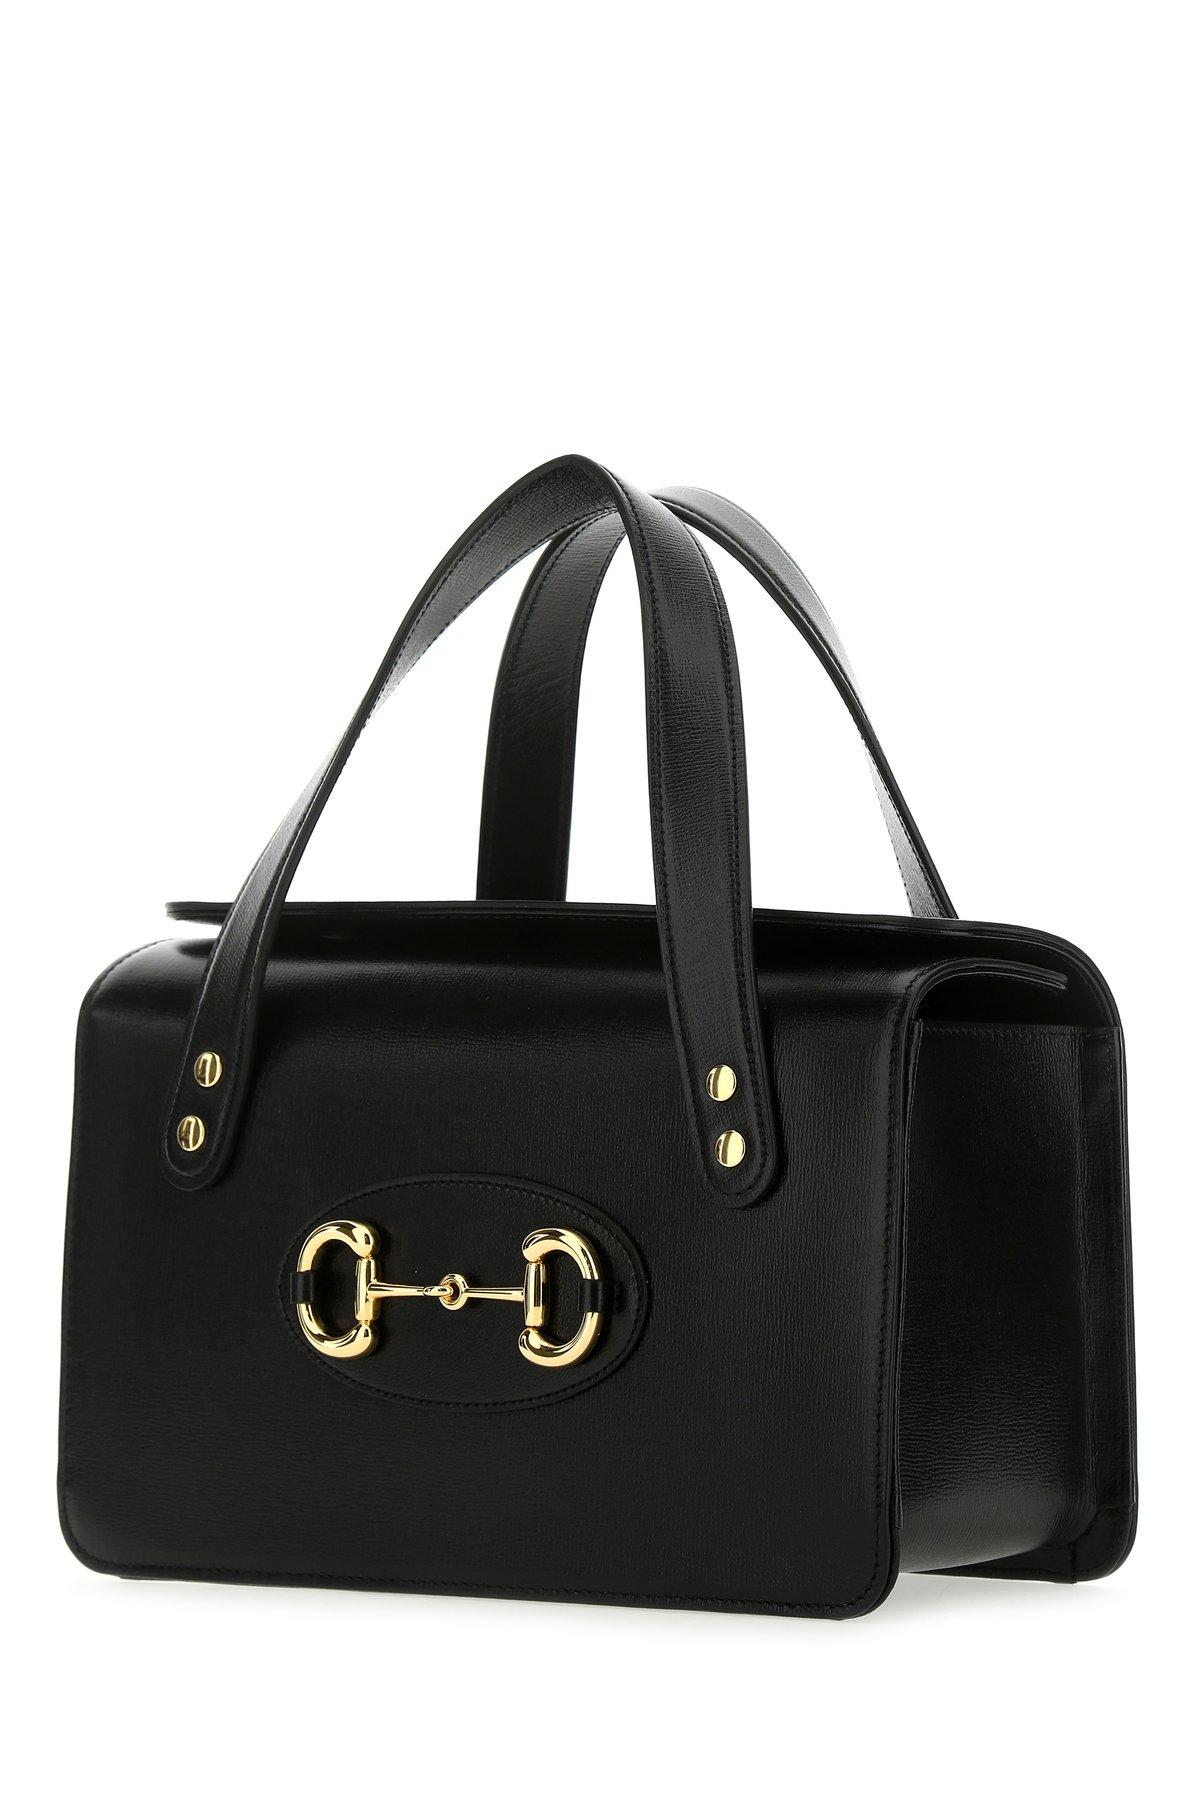 Bag of the Week: Gucci Horsebit 1955 Bag in Black